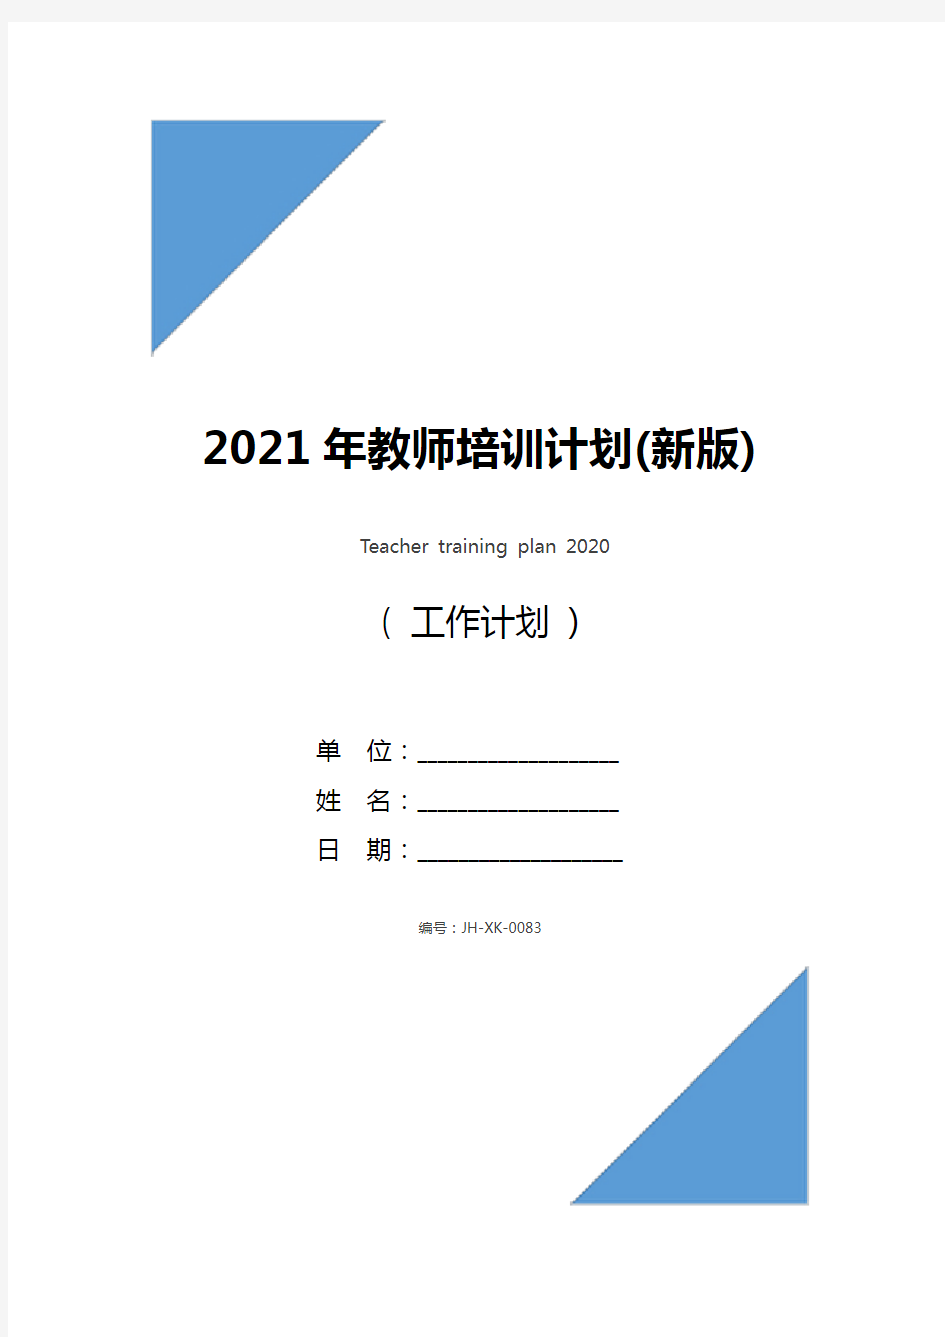 2021年教师培训计划(新版)